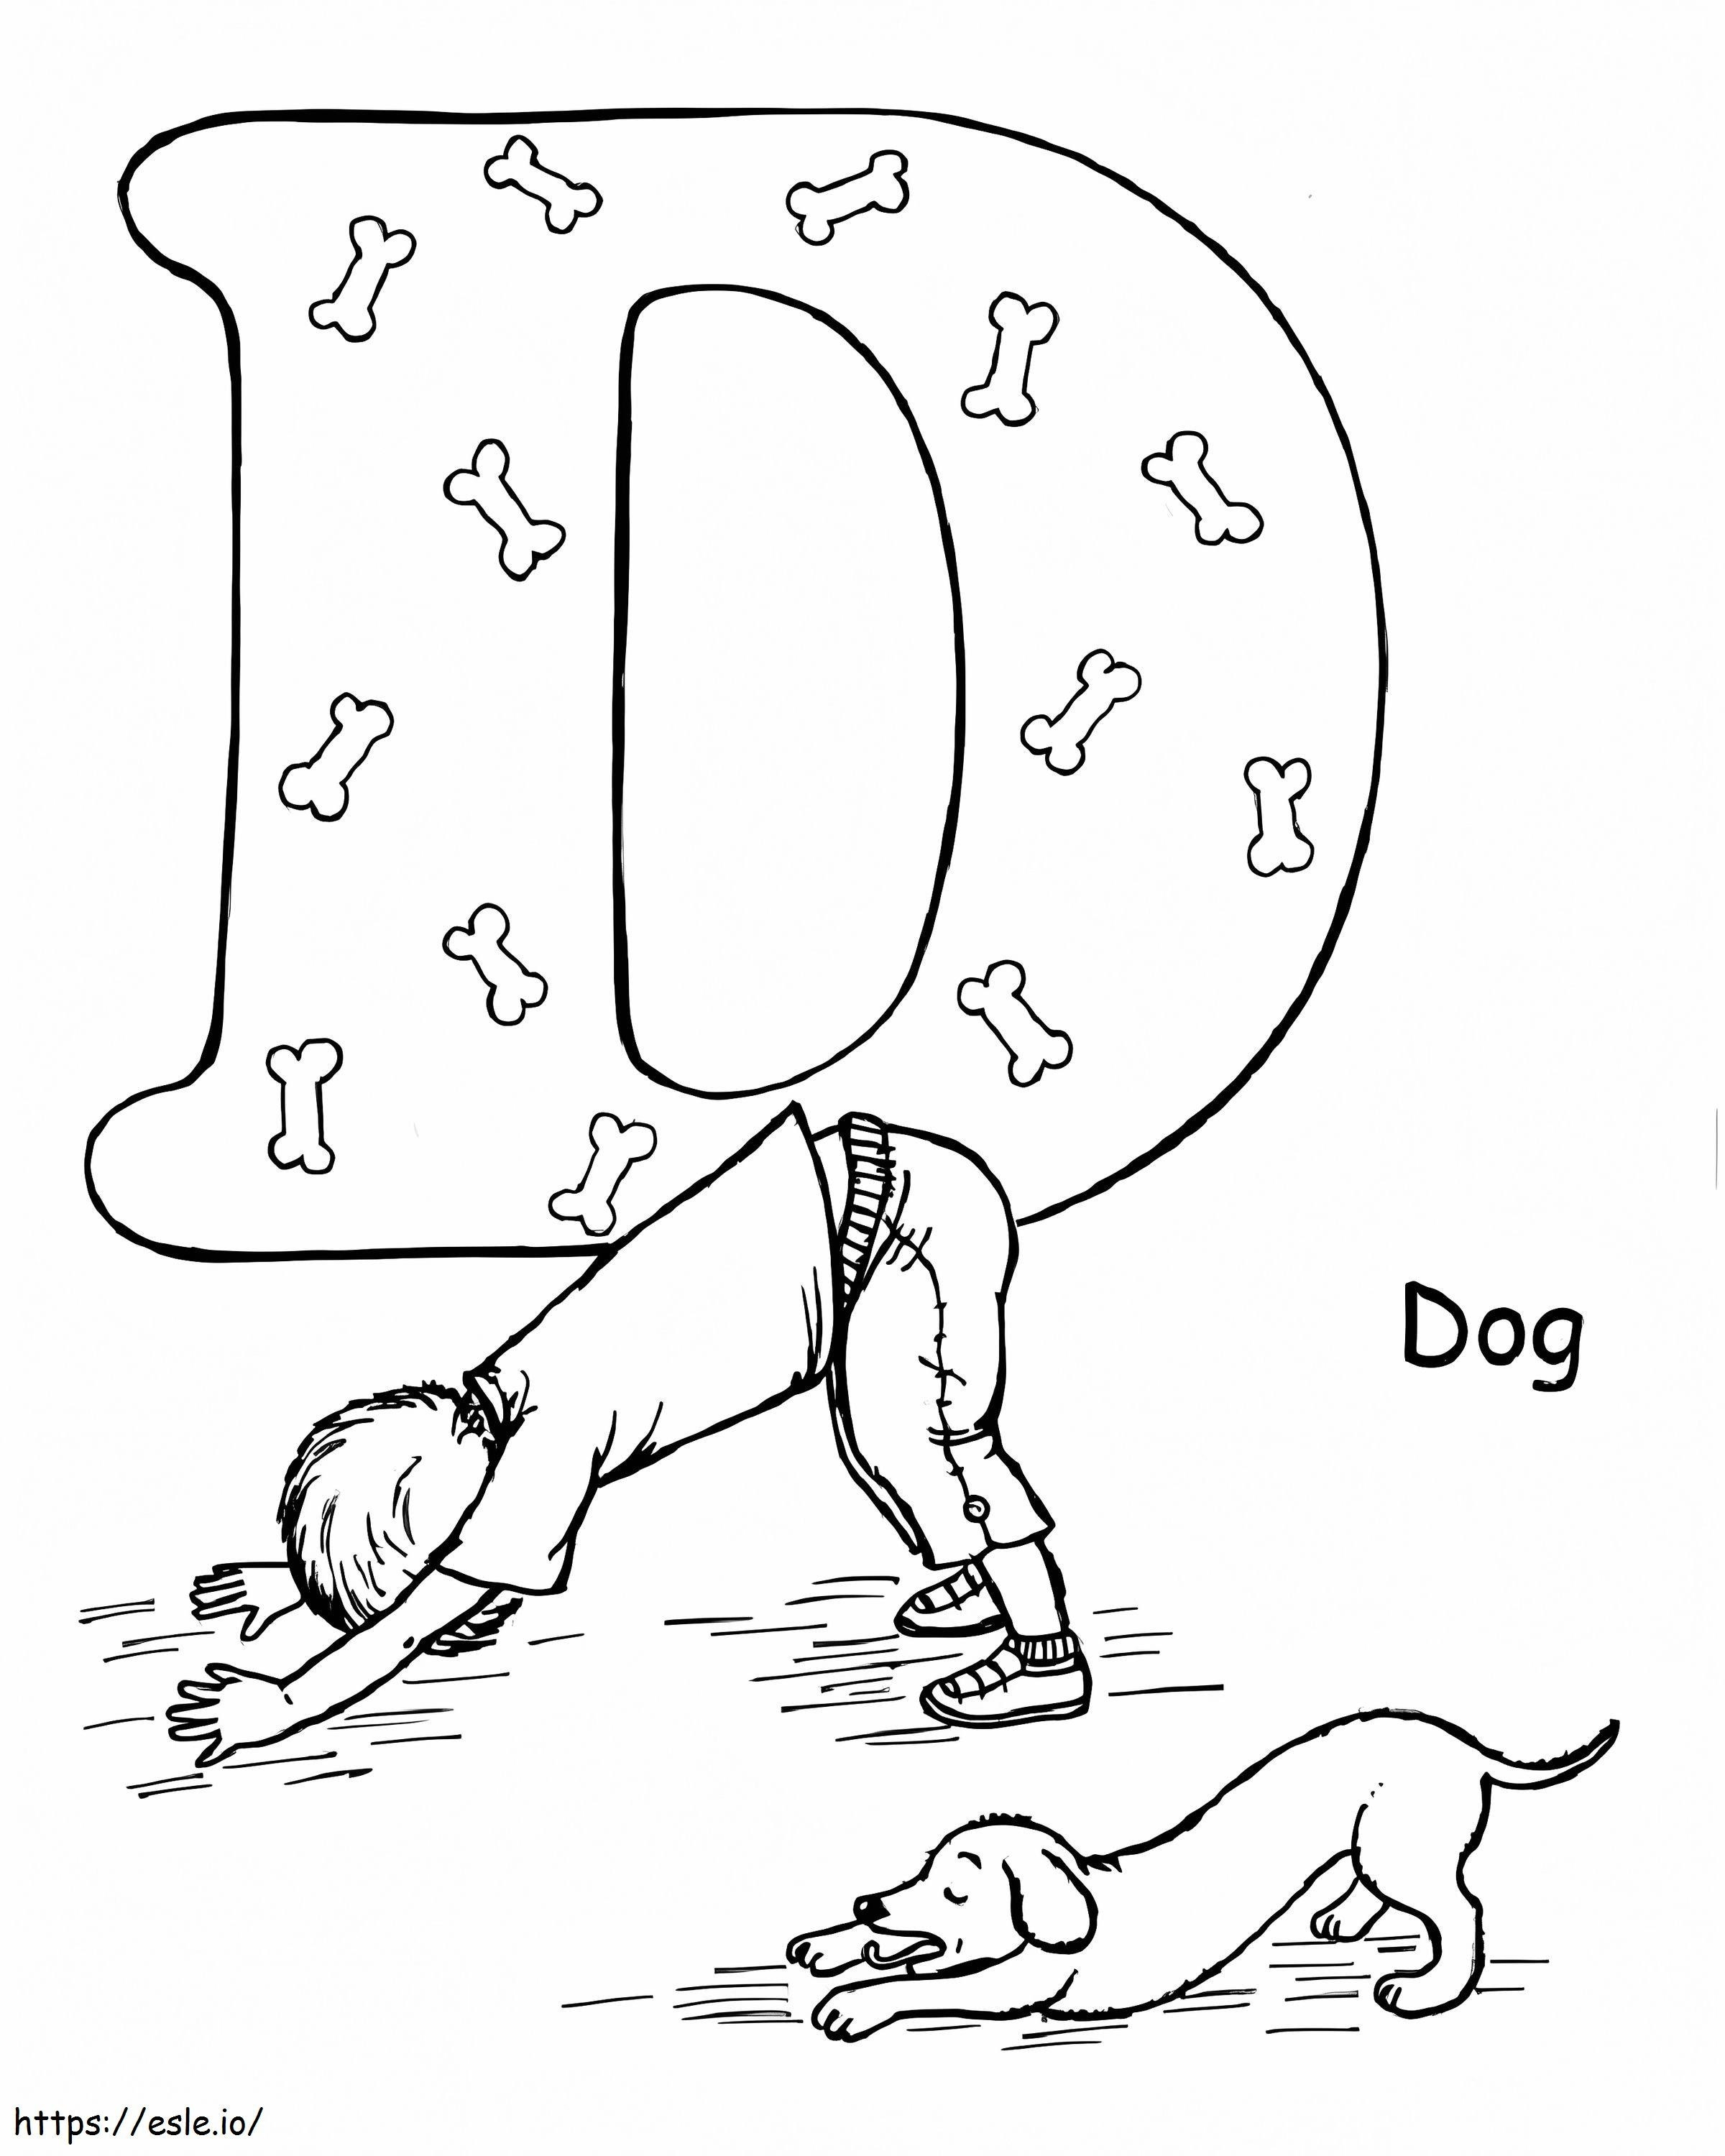 Postura de cachorro para ioga para colorir